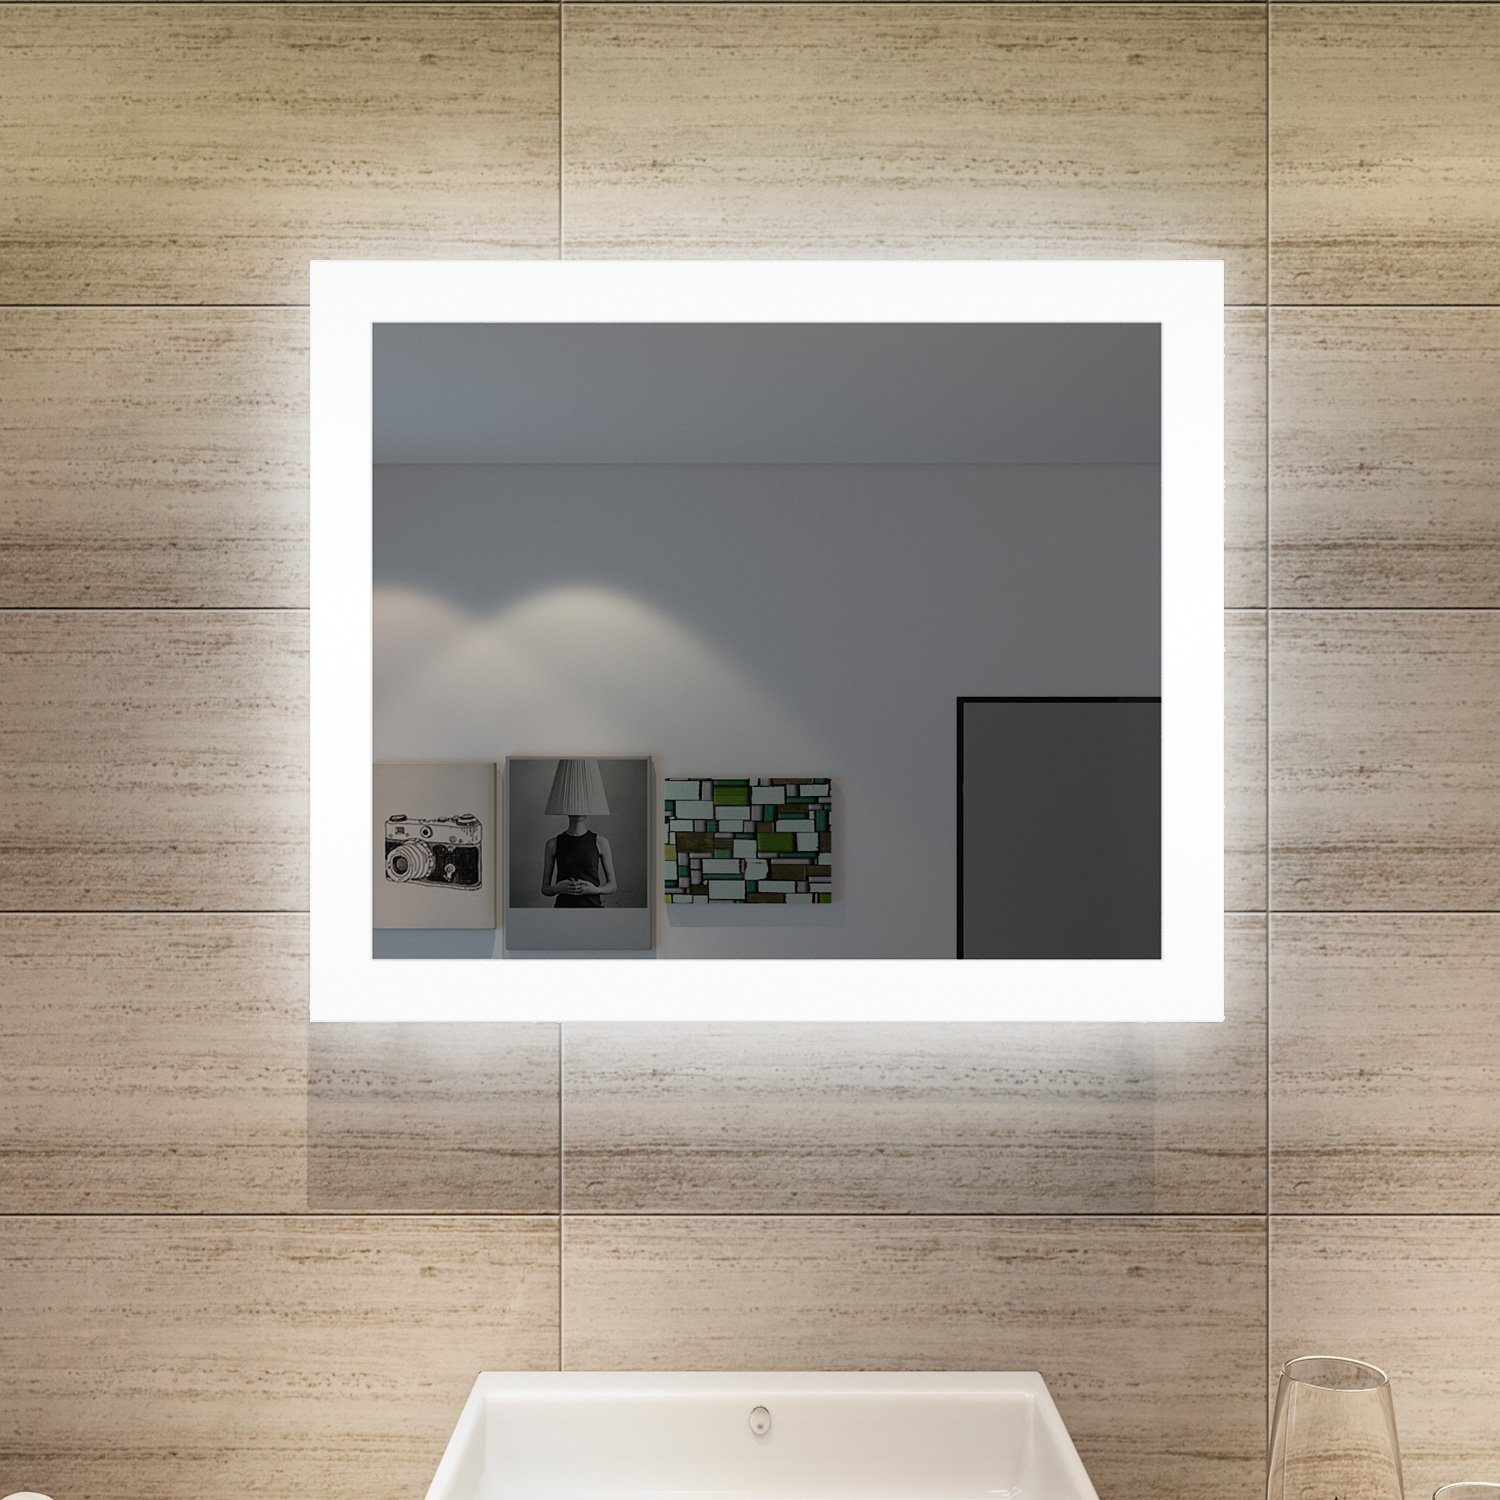 SONNI Badspiegel mit Beleuchtung energiesparender Lichtspiegel IP44,Wandspiegel Badezimmerspiegel,Wandschalter,kaltweiß,IP44, LED Kaltweiß